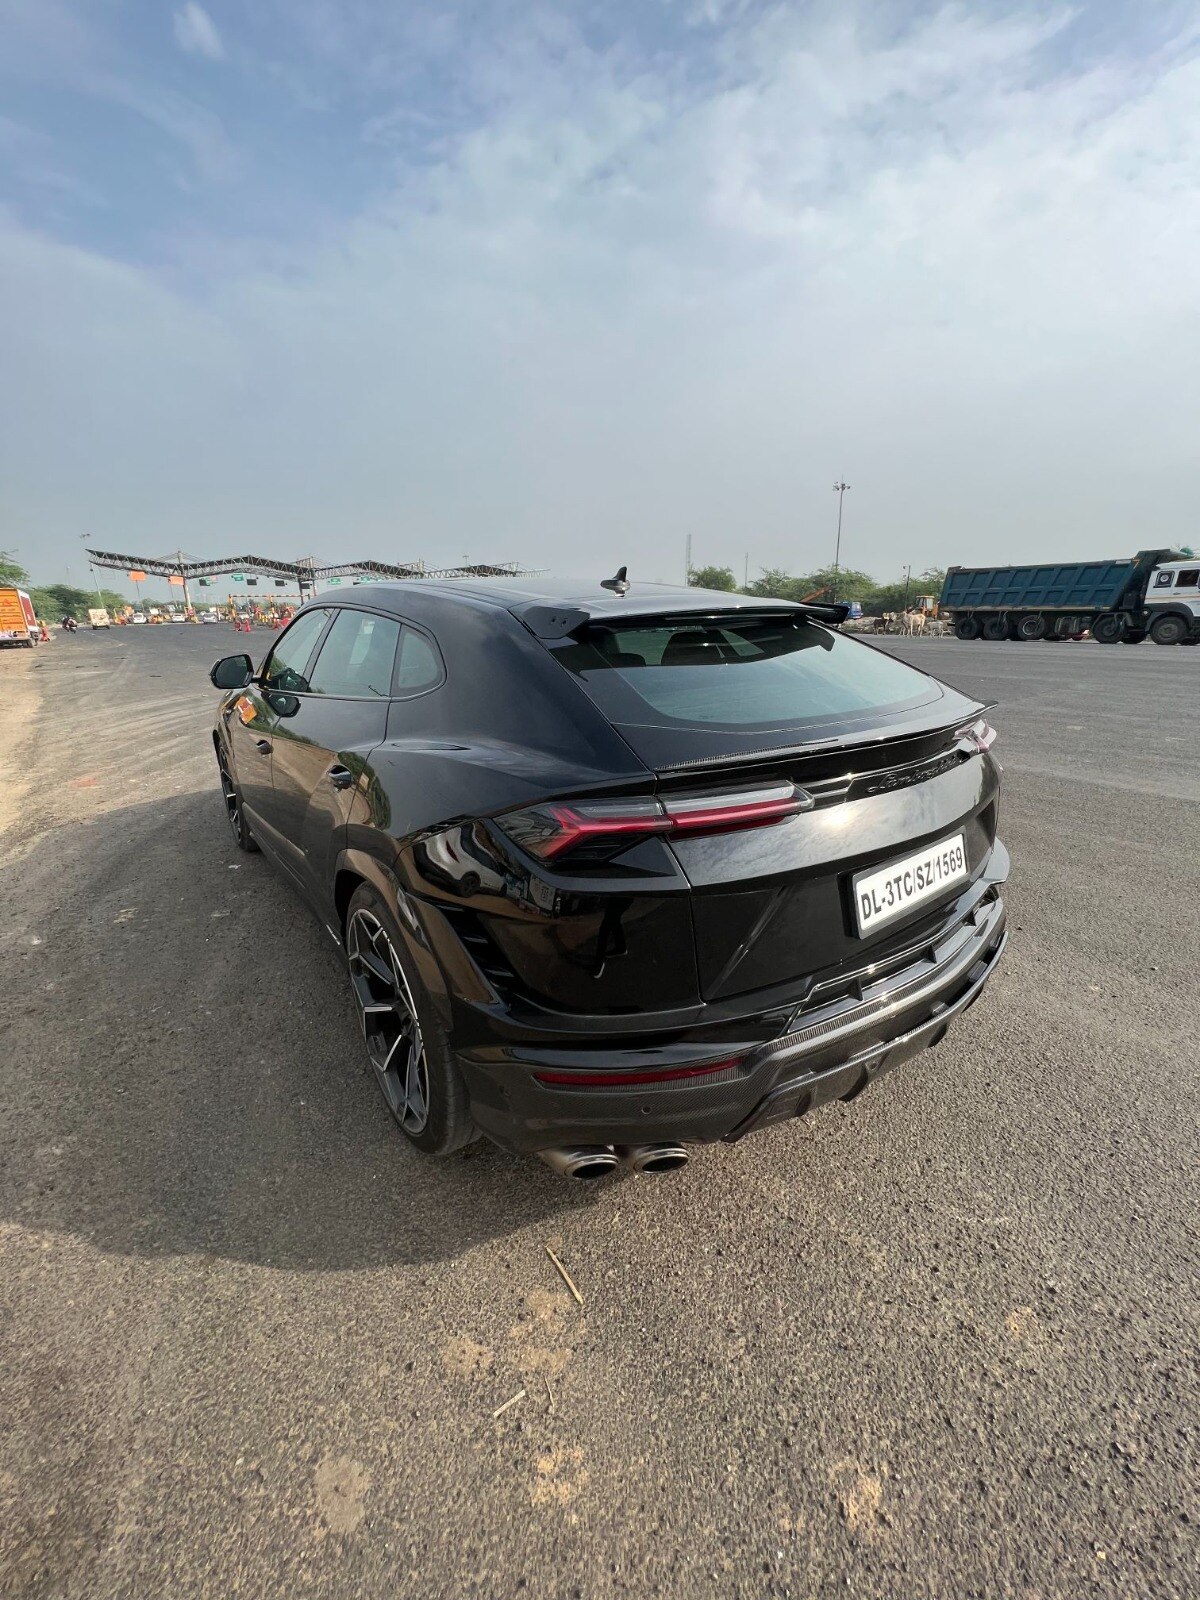 Lamborghini Urus Performante: फास्टेस्ट एसयूवी उरुस पर्फॉर्मेंट इंडिया का रोड टेस्ट रिव्यू, पढ़कर दिल खुश हो जायेगा